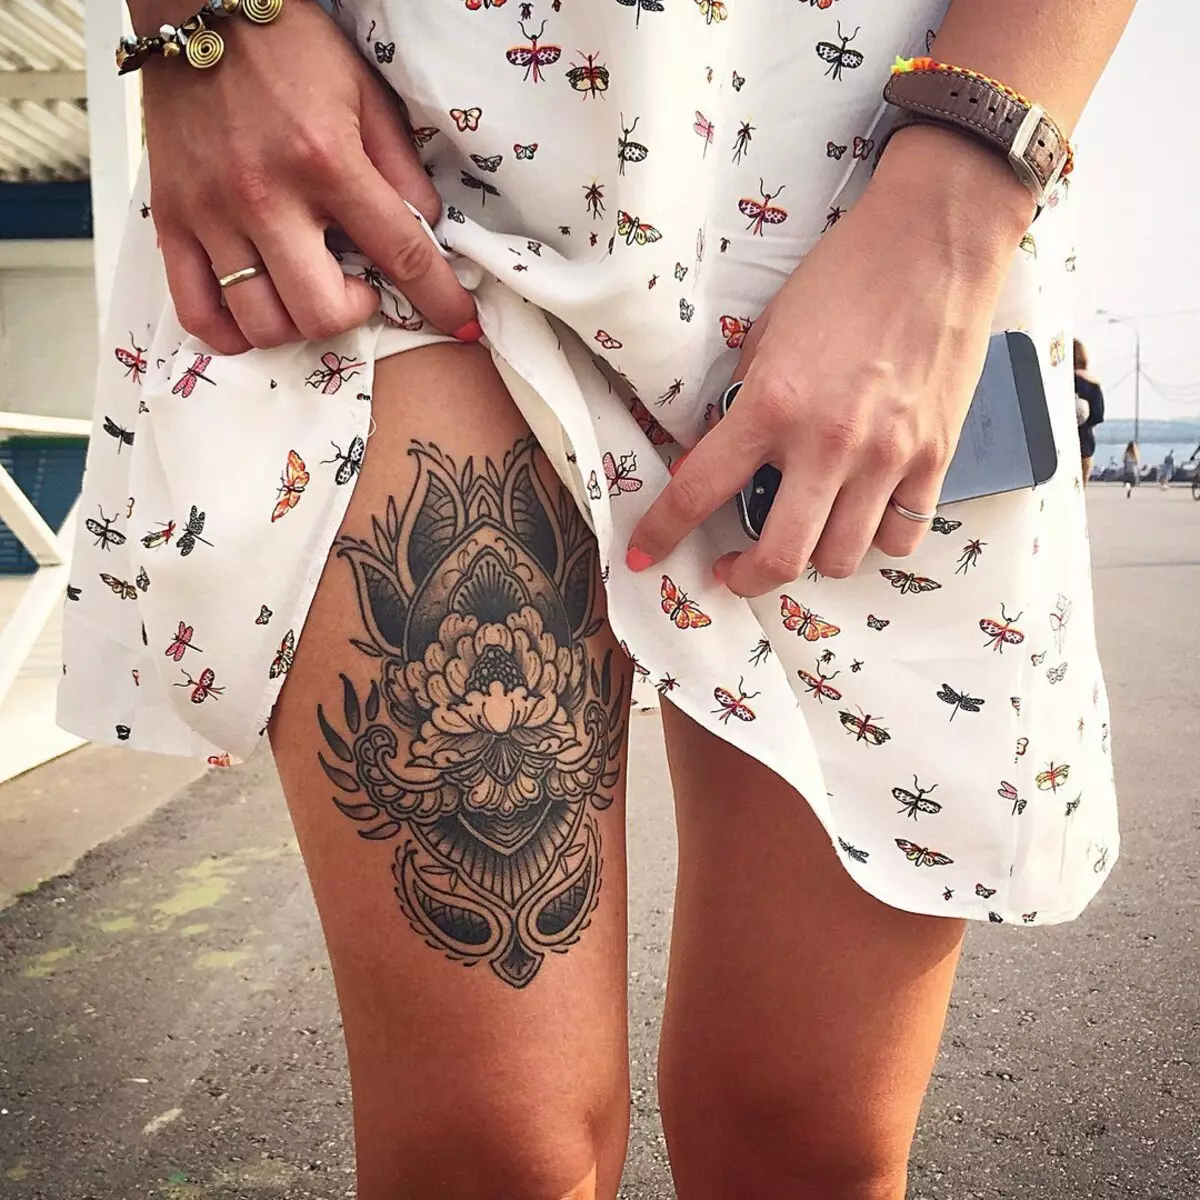 Tatuazh i bukur për vajzat (80 foto): Skica e tatuazheve më elegante femërore në të gjitha pjesët e trupit dhe shembuj të tjerë elegant të tatuazheve me vizatime dhe mbishkrime 13775_3